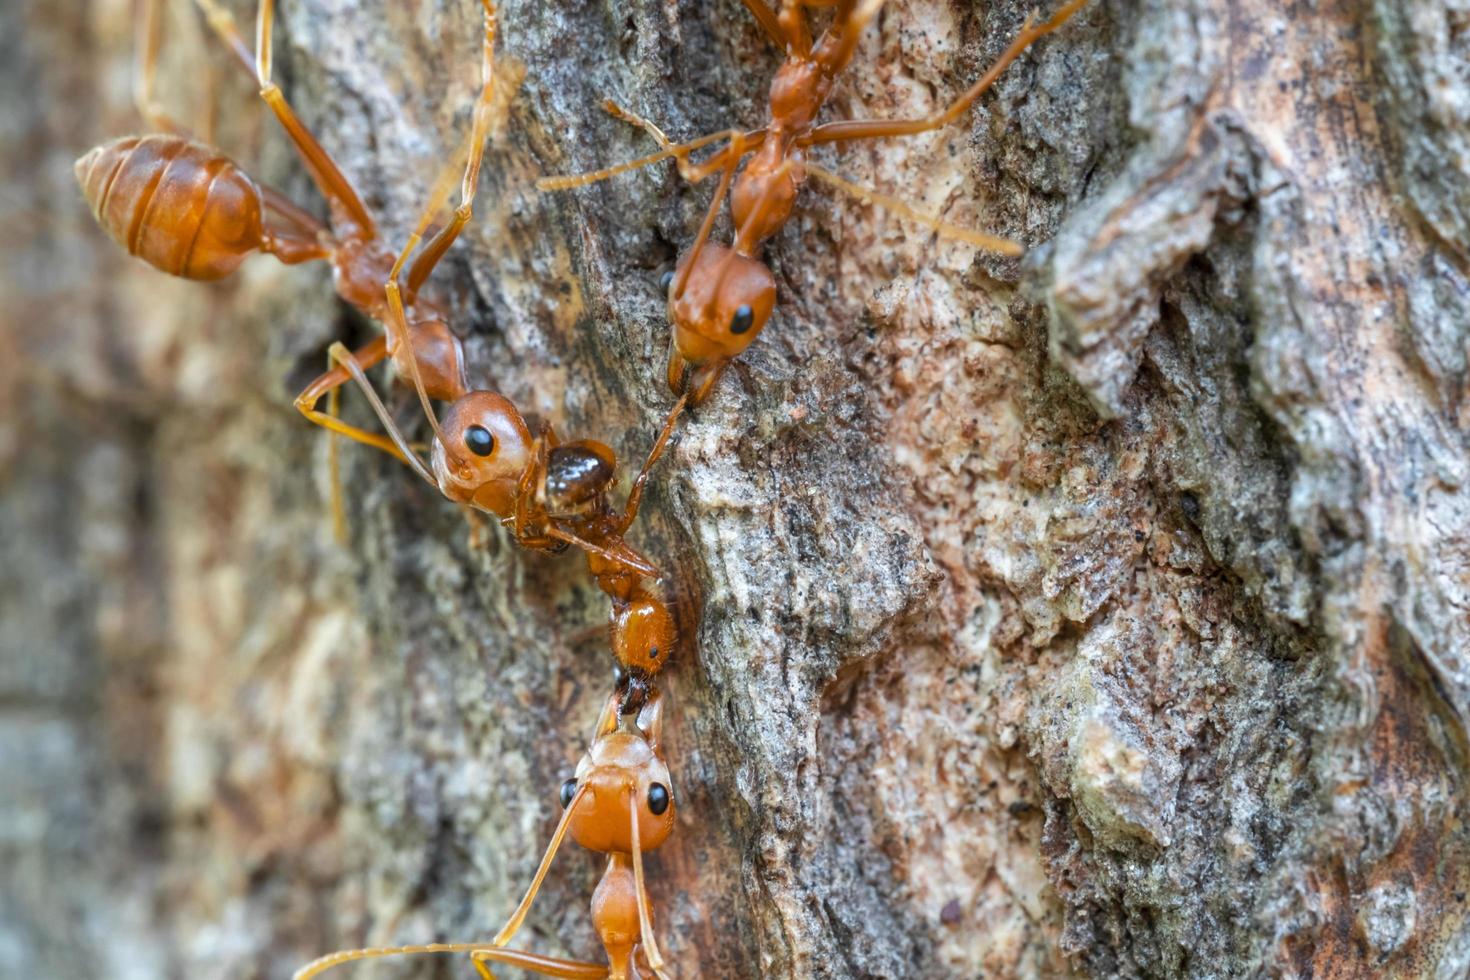 rode mierenactieteam werkt voor voedsel op de schors, selecteert oogfocus en vervaagt rond, macro foto